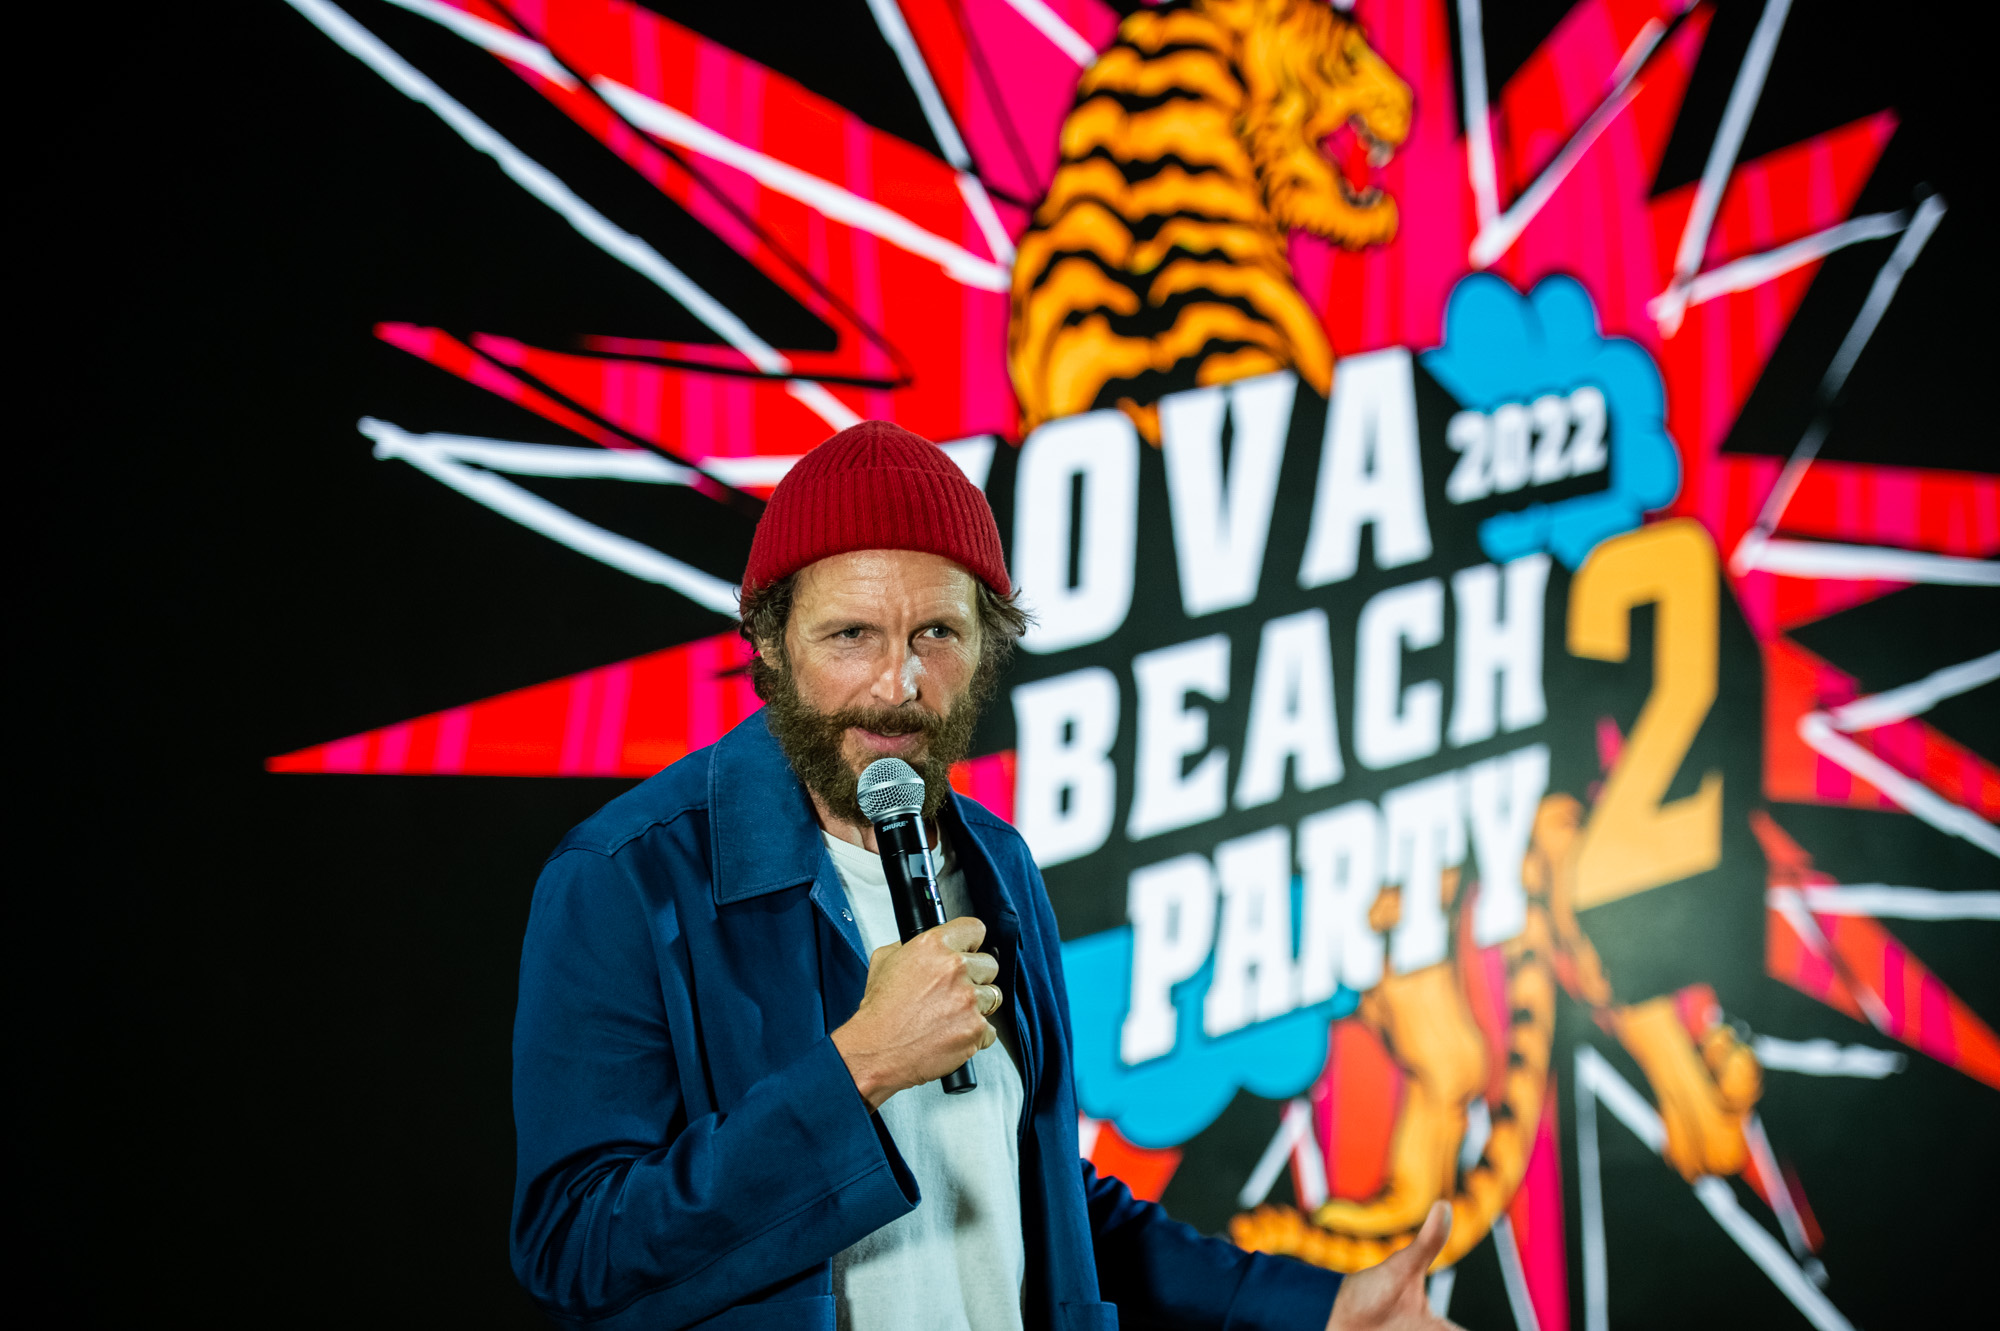 Jovanotti torna con il Jova Beach Party per un’estate 2022 infuocata